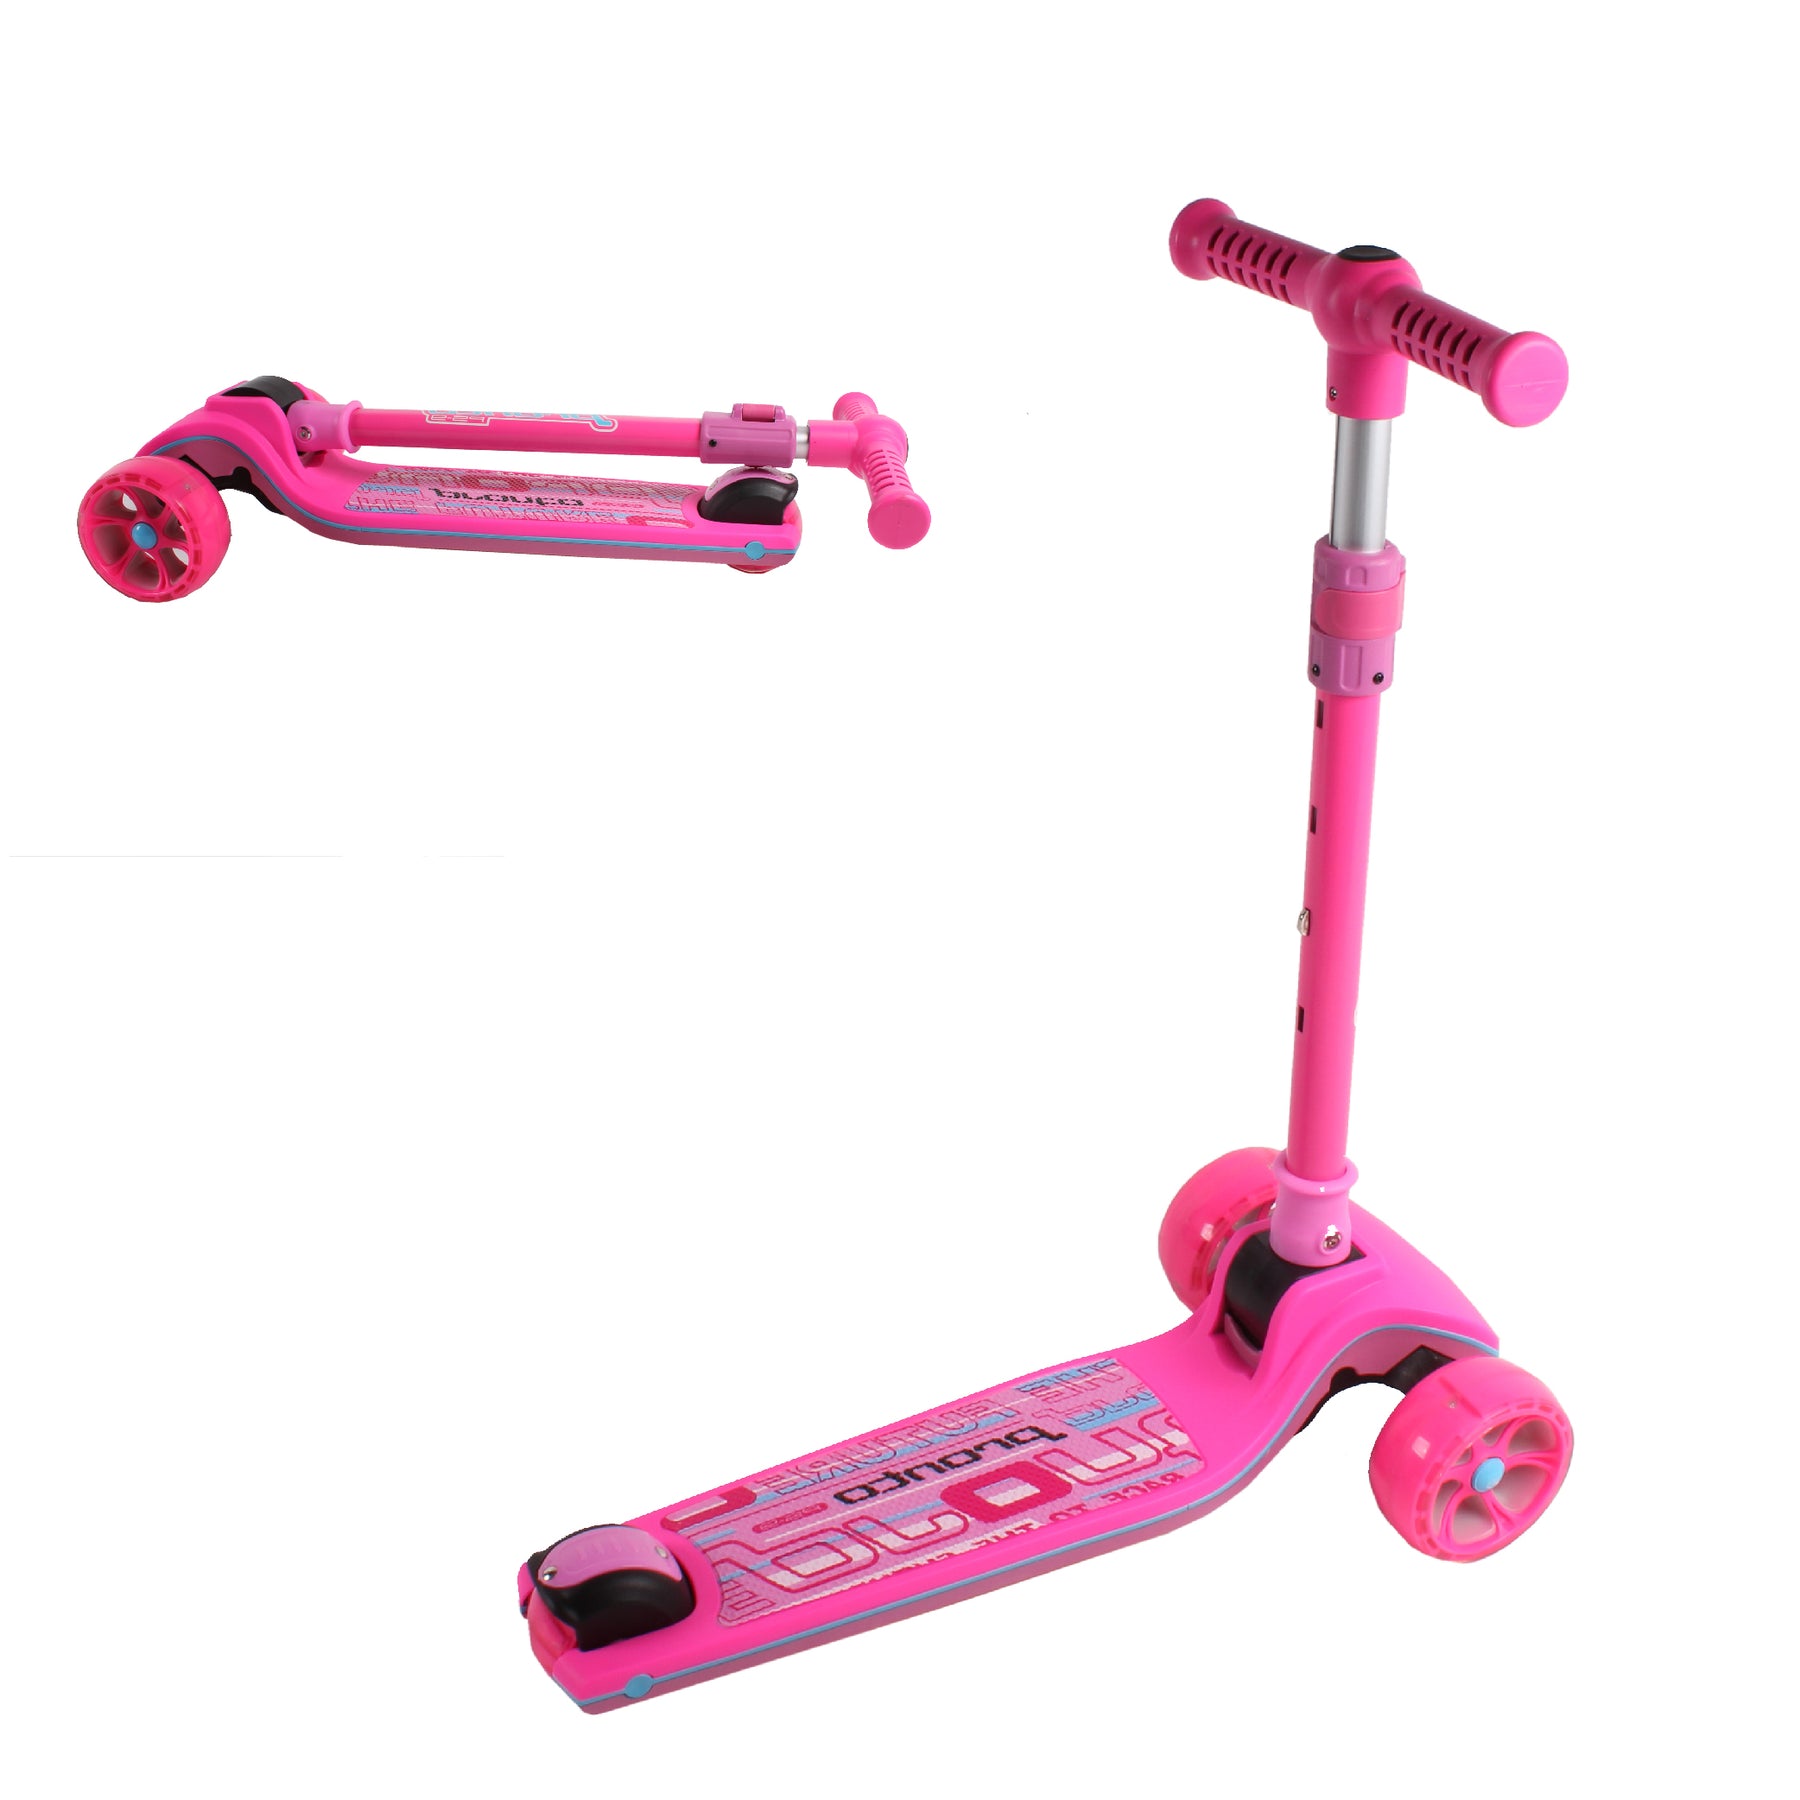 MomnLittle - Patinete plegable de 3 ruedas para niños (rosa/beige/blanco)  con ruedas de luz LED, altura ajustable del manillar para niños y niñas